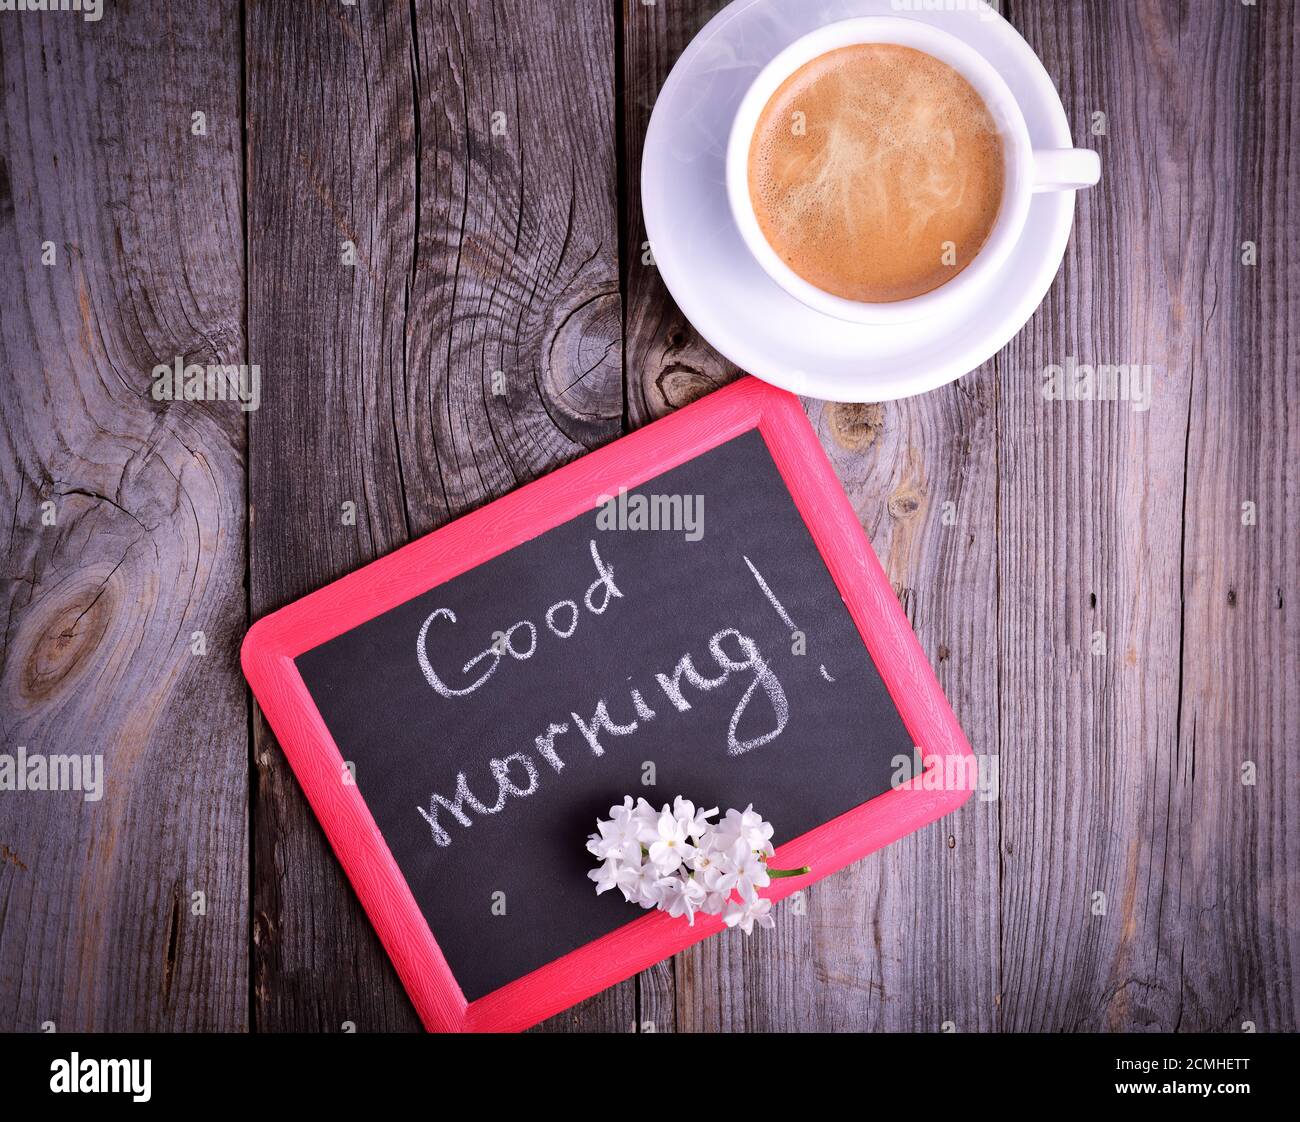 Taza de café y una pizarra negra con la inscripción good morning Fotografía  de stock - Alamy